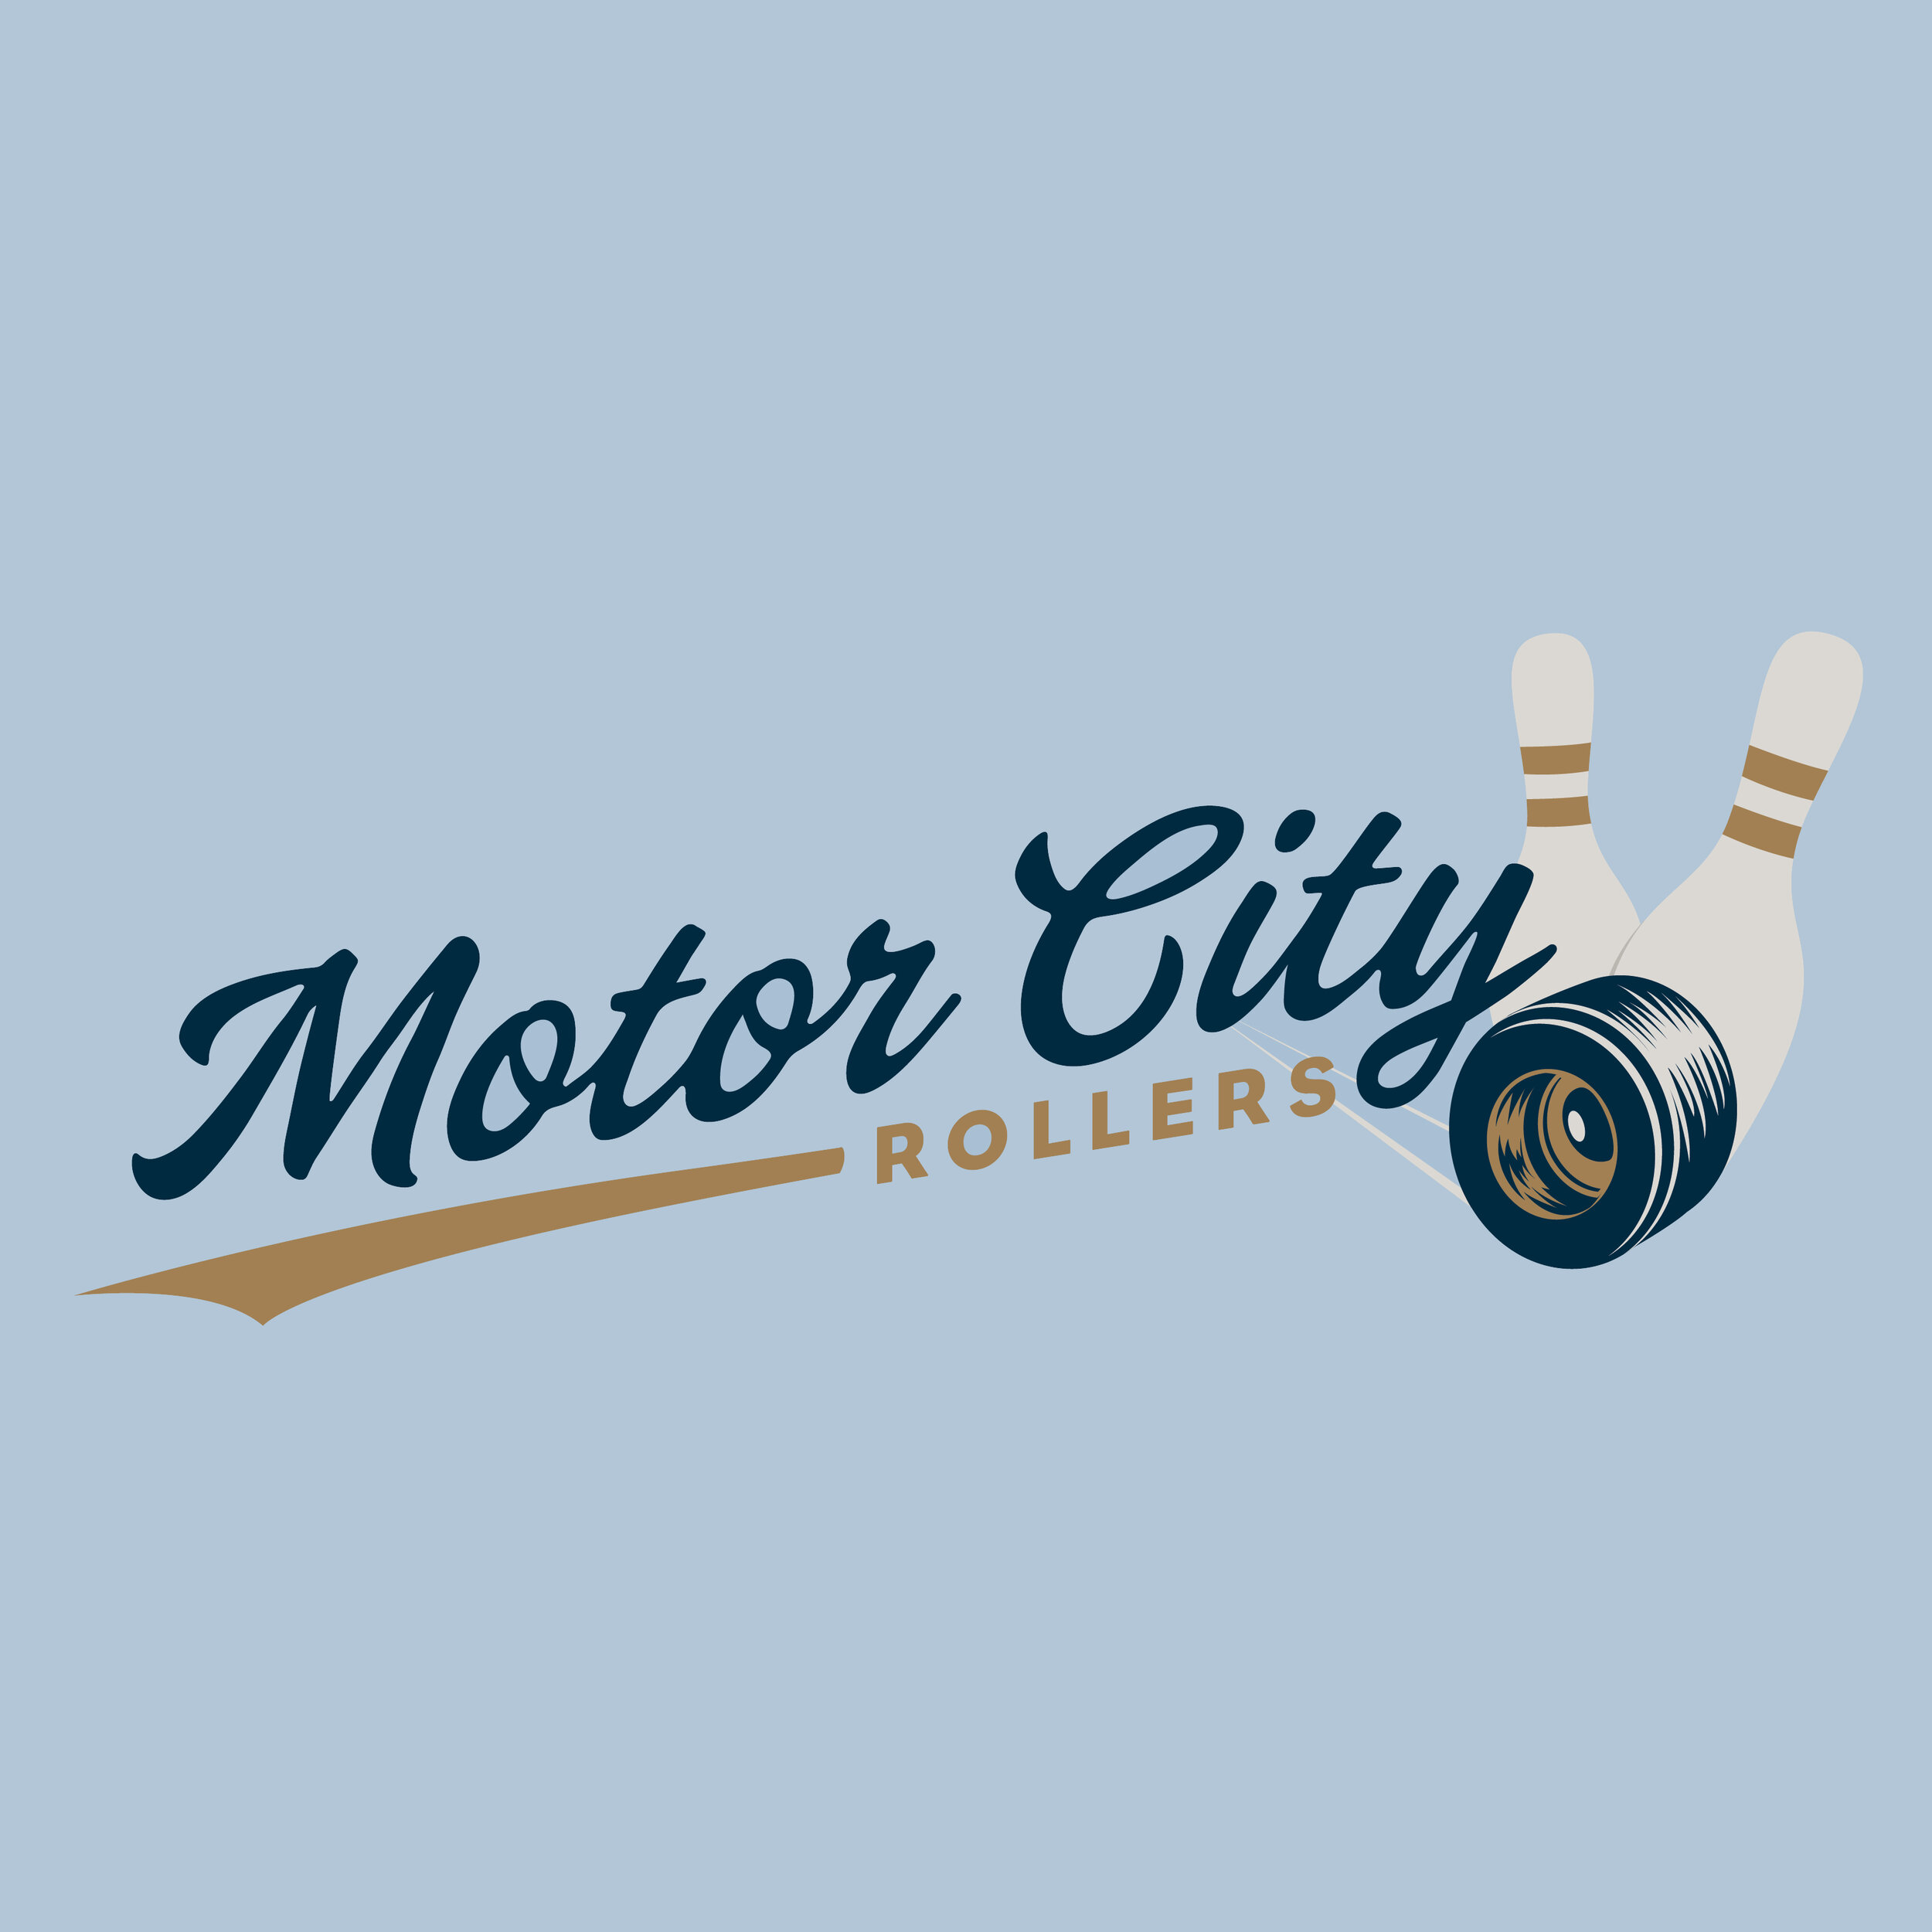 MotorCityRollers-01.jpg